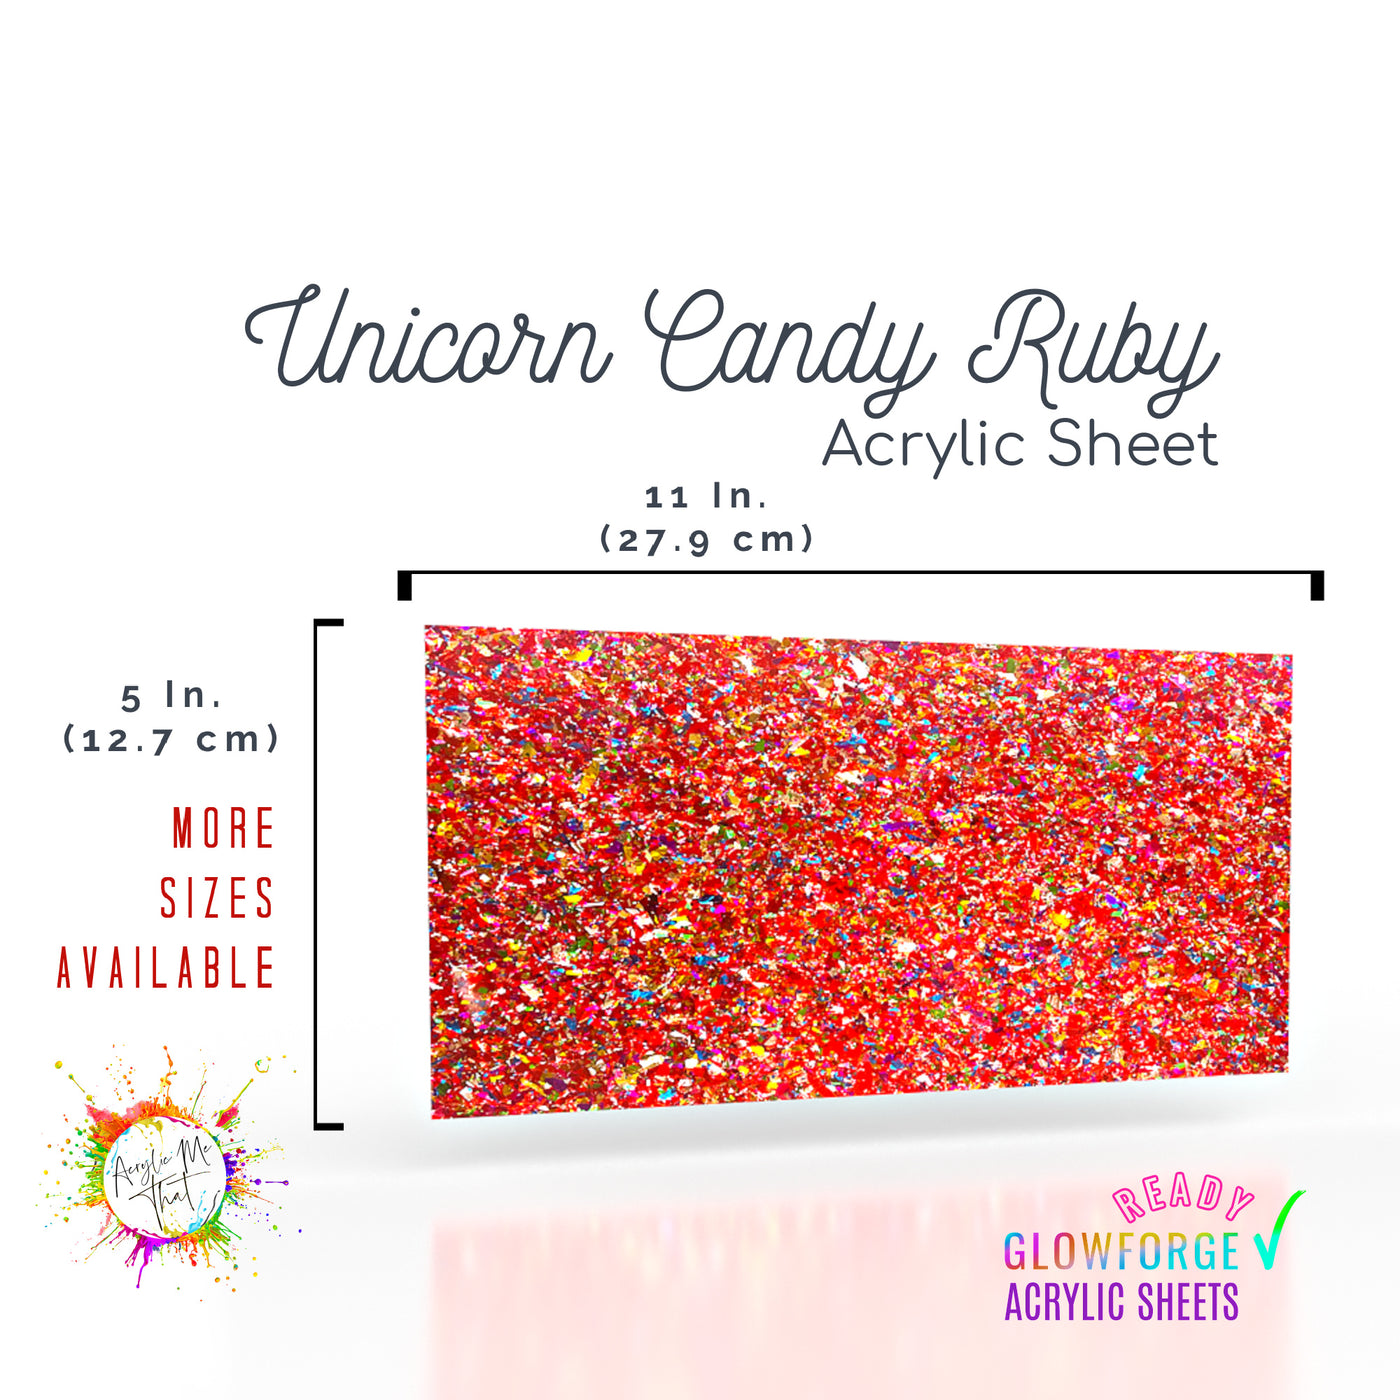 Unicorn Candy Ruby Red Chunky Glitter Acrylic Sheet